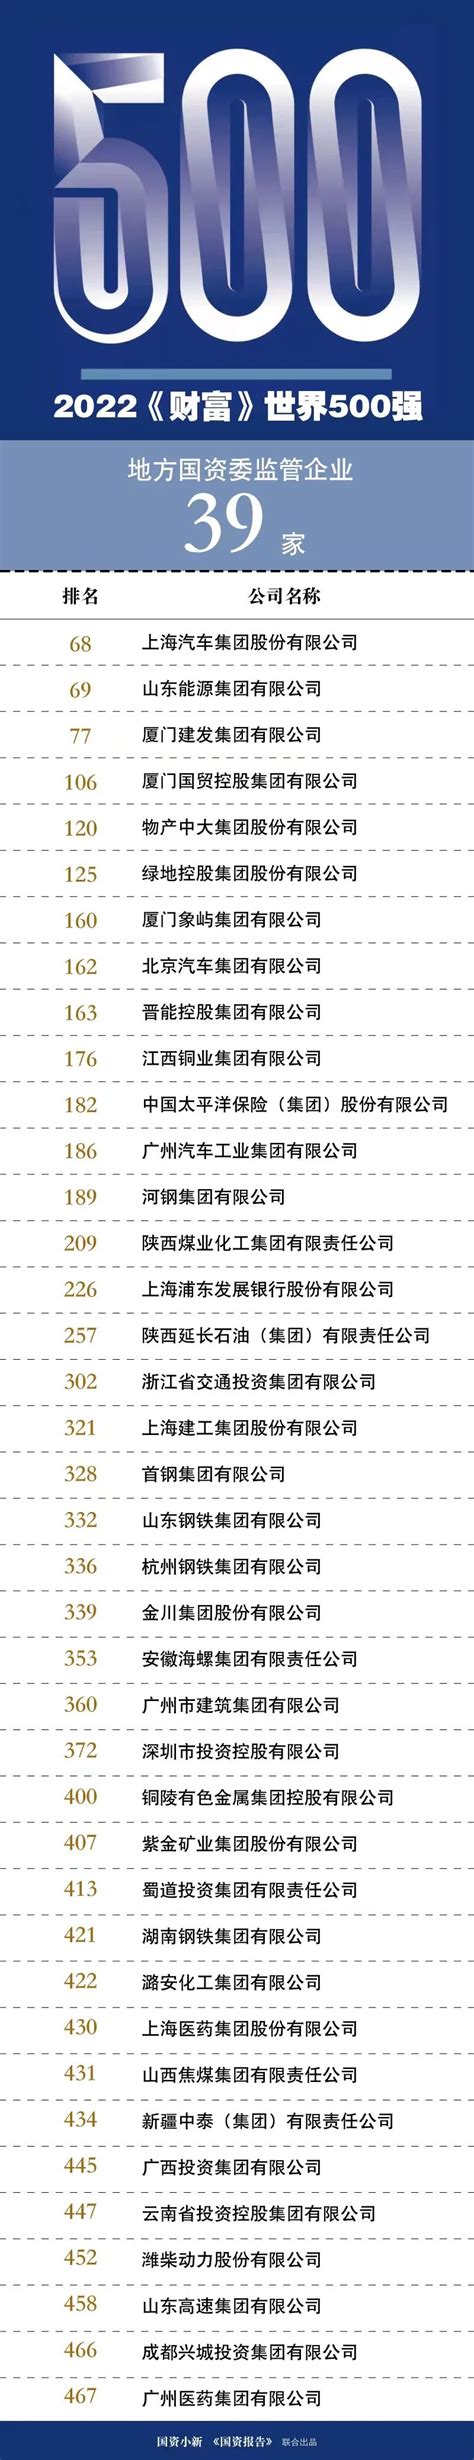 名单在此！2019中国企业500强榜单揭晓-在临沂